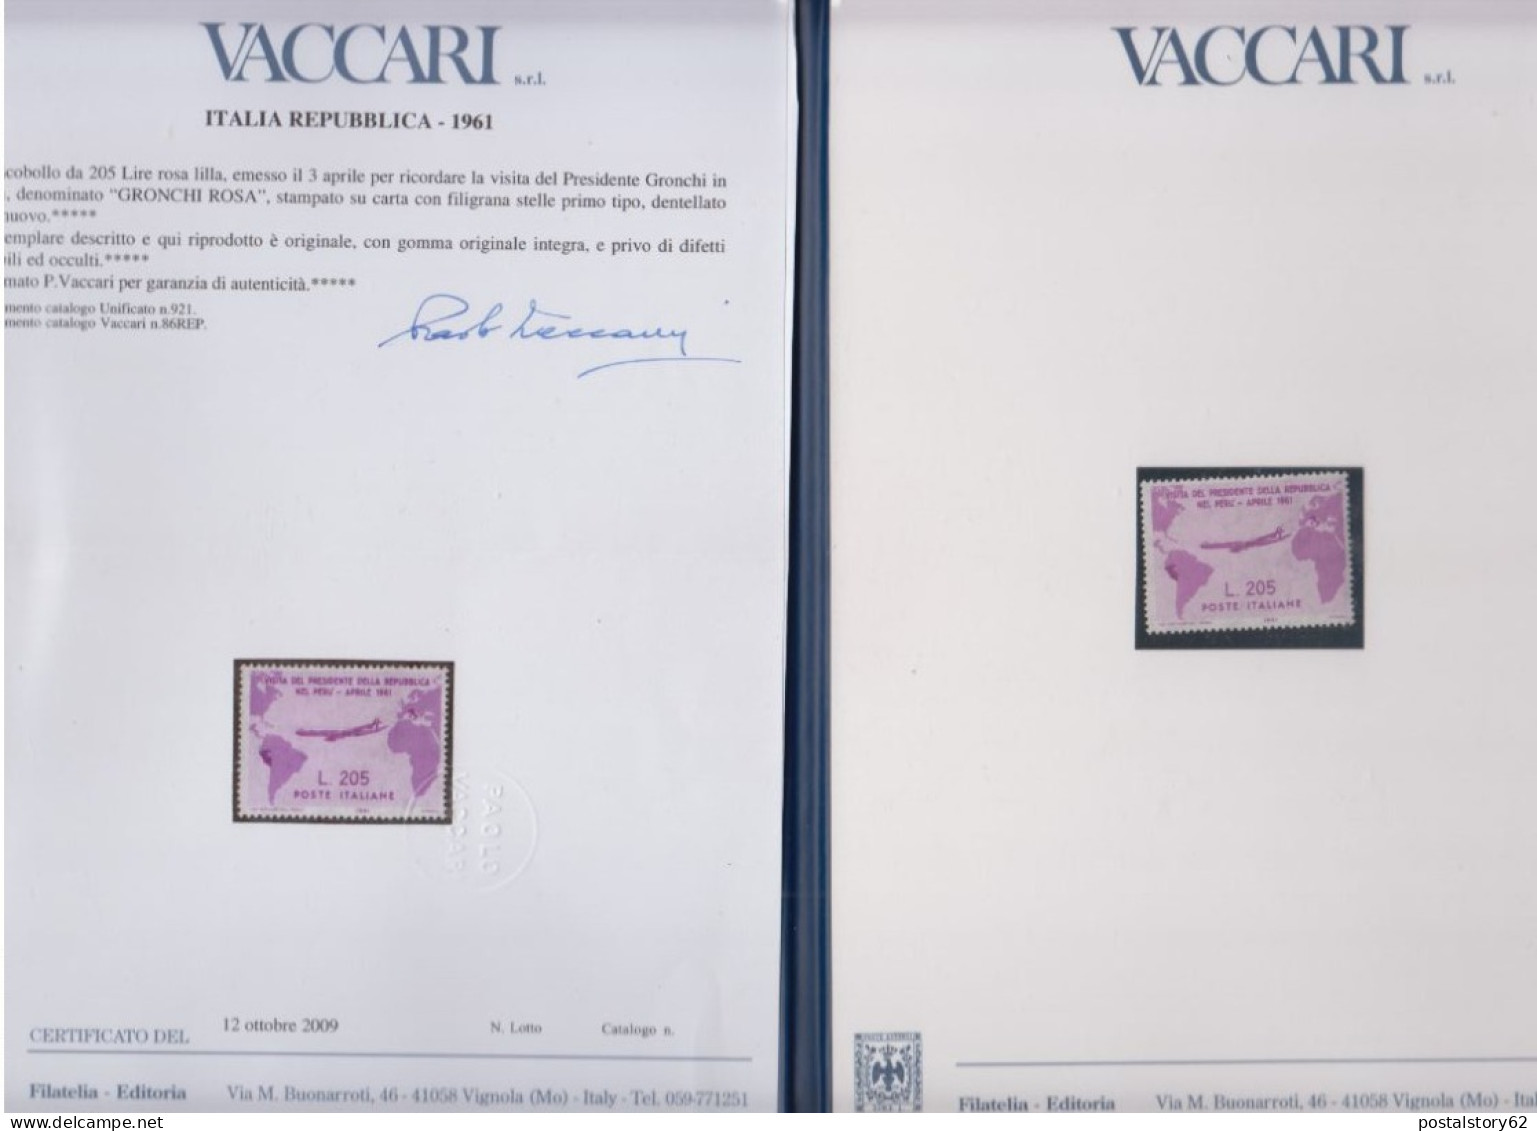 Gronchi Rosa, Repubblica Italiana Francobollo Da 205 Lire Emesso Il 03 Aprile 1961 - Folder E Certificato Paolo Vaccari - 1961-70: Nieuw/plakker